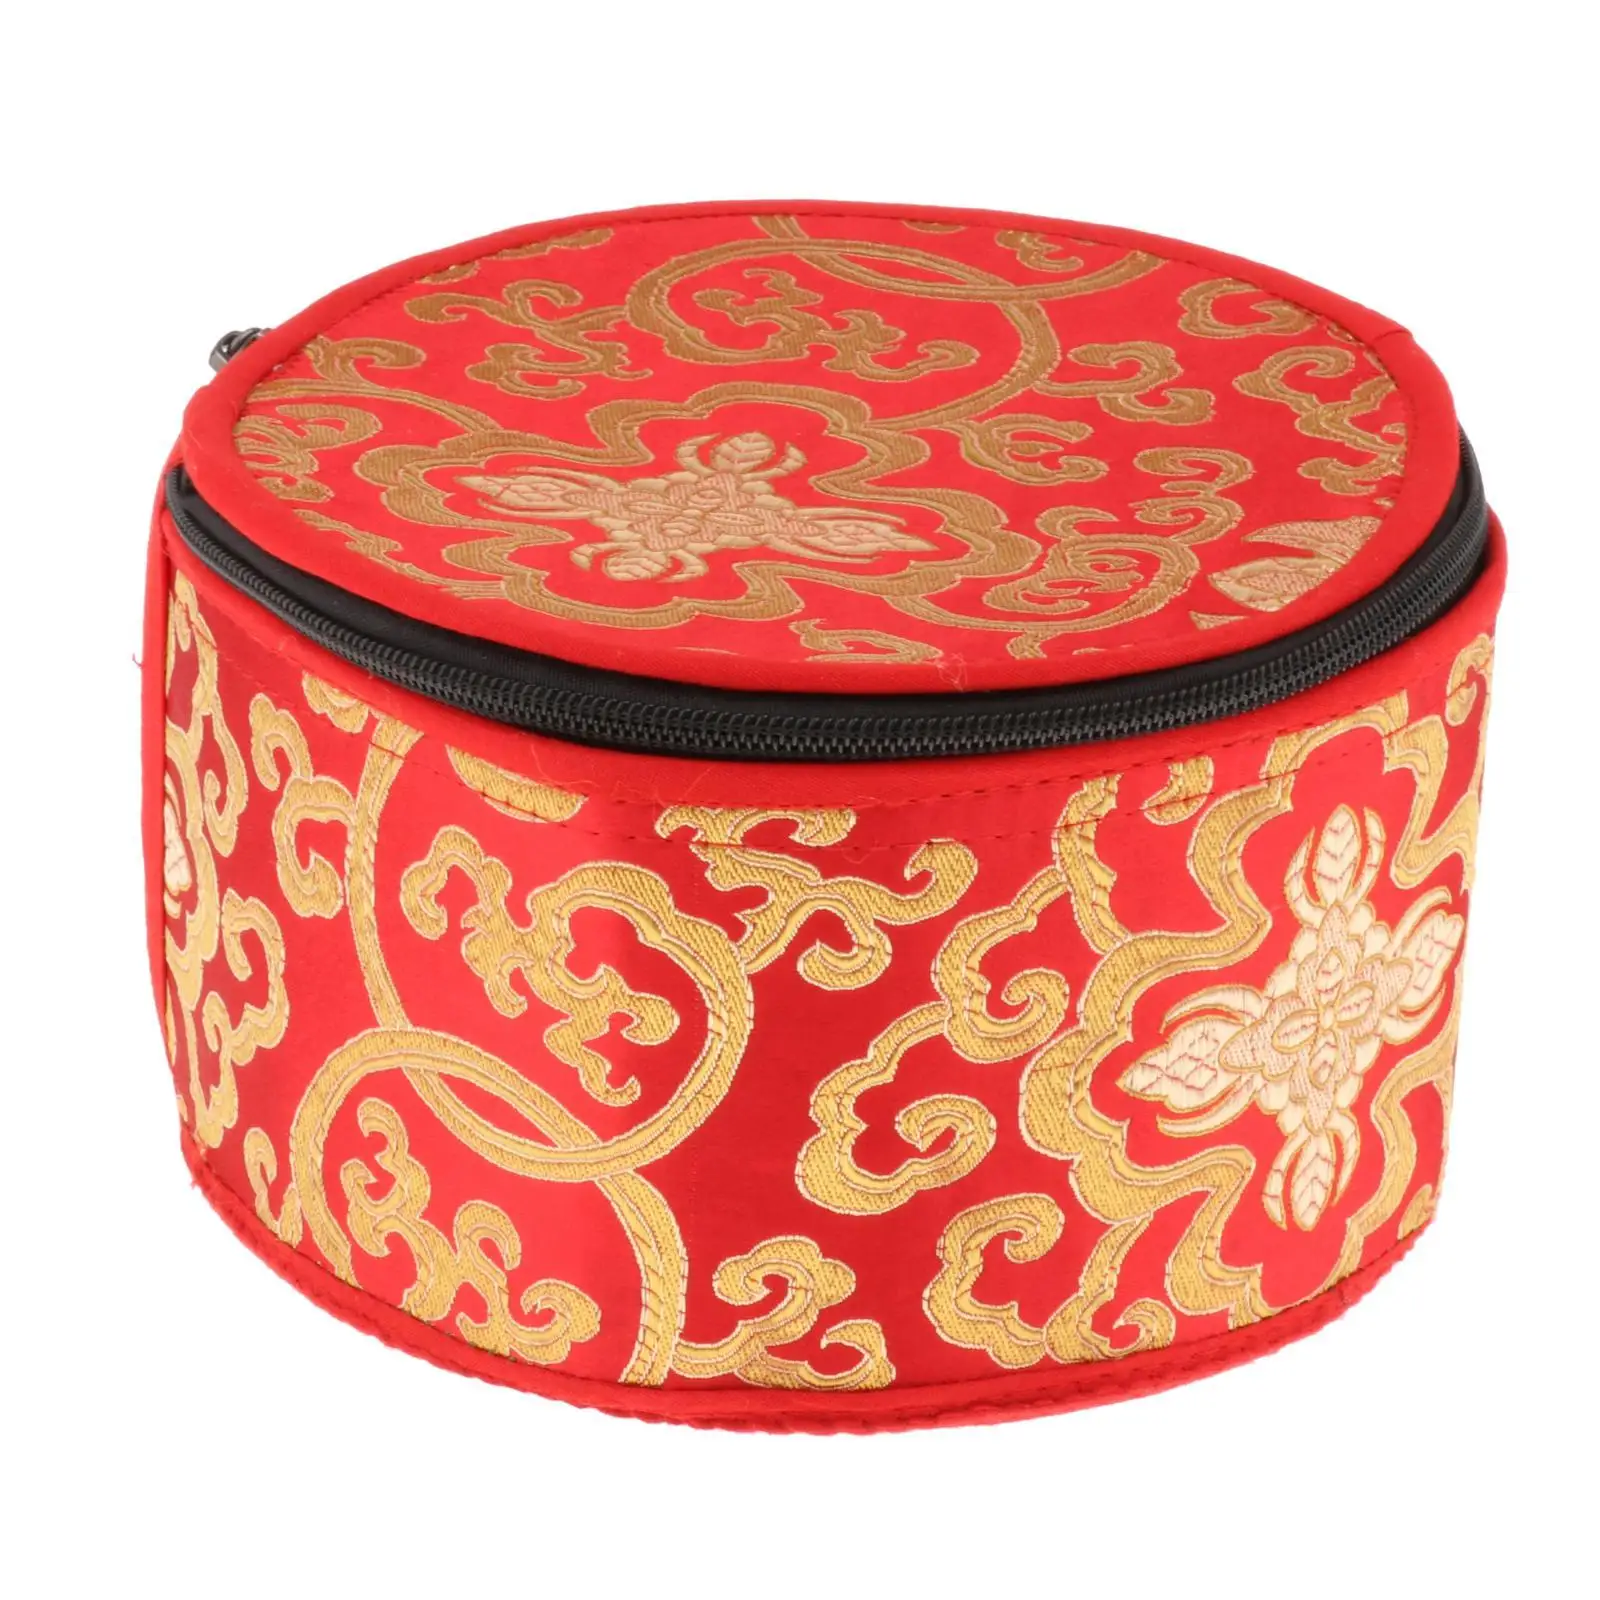 Meditation Sound Bowl Fabric Package Box Tibetan Singing Bowl Storage Bag